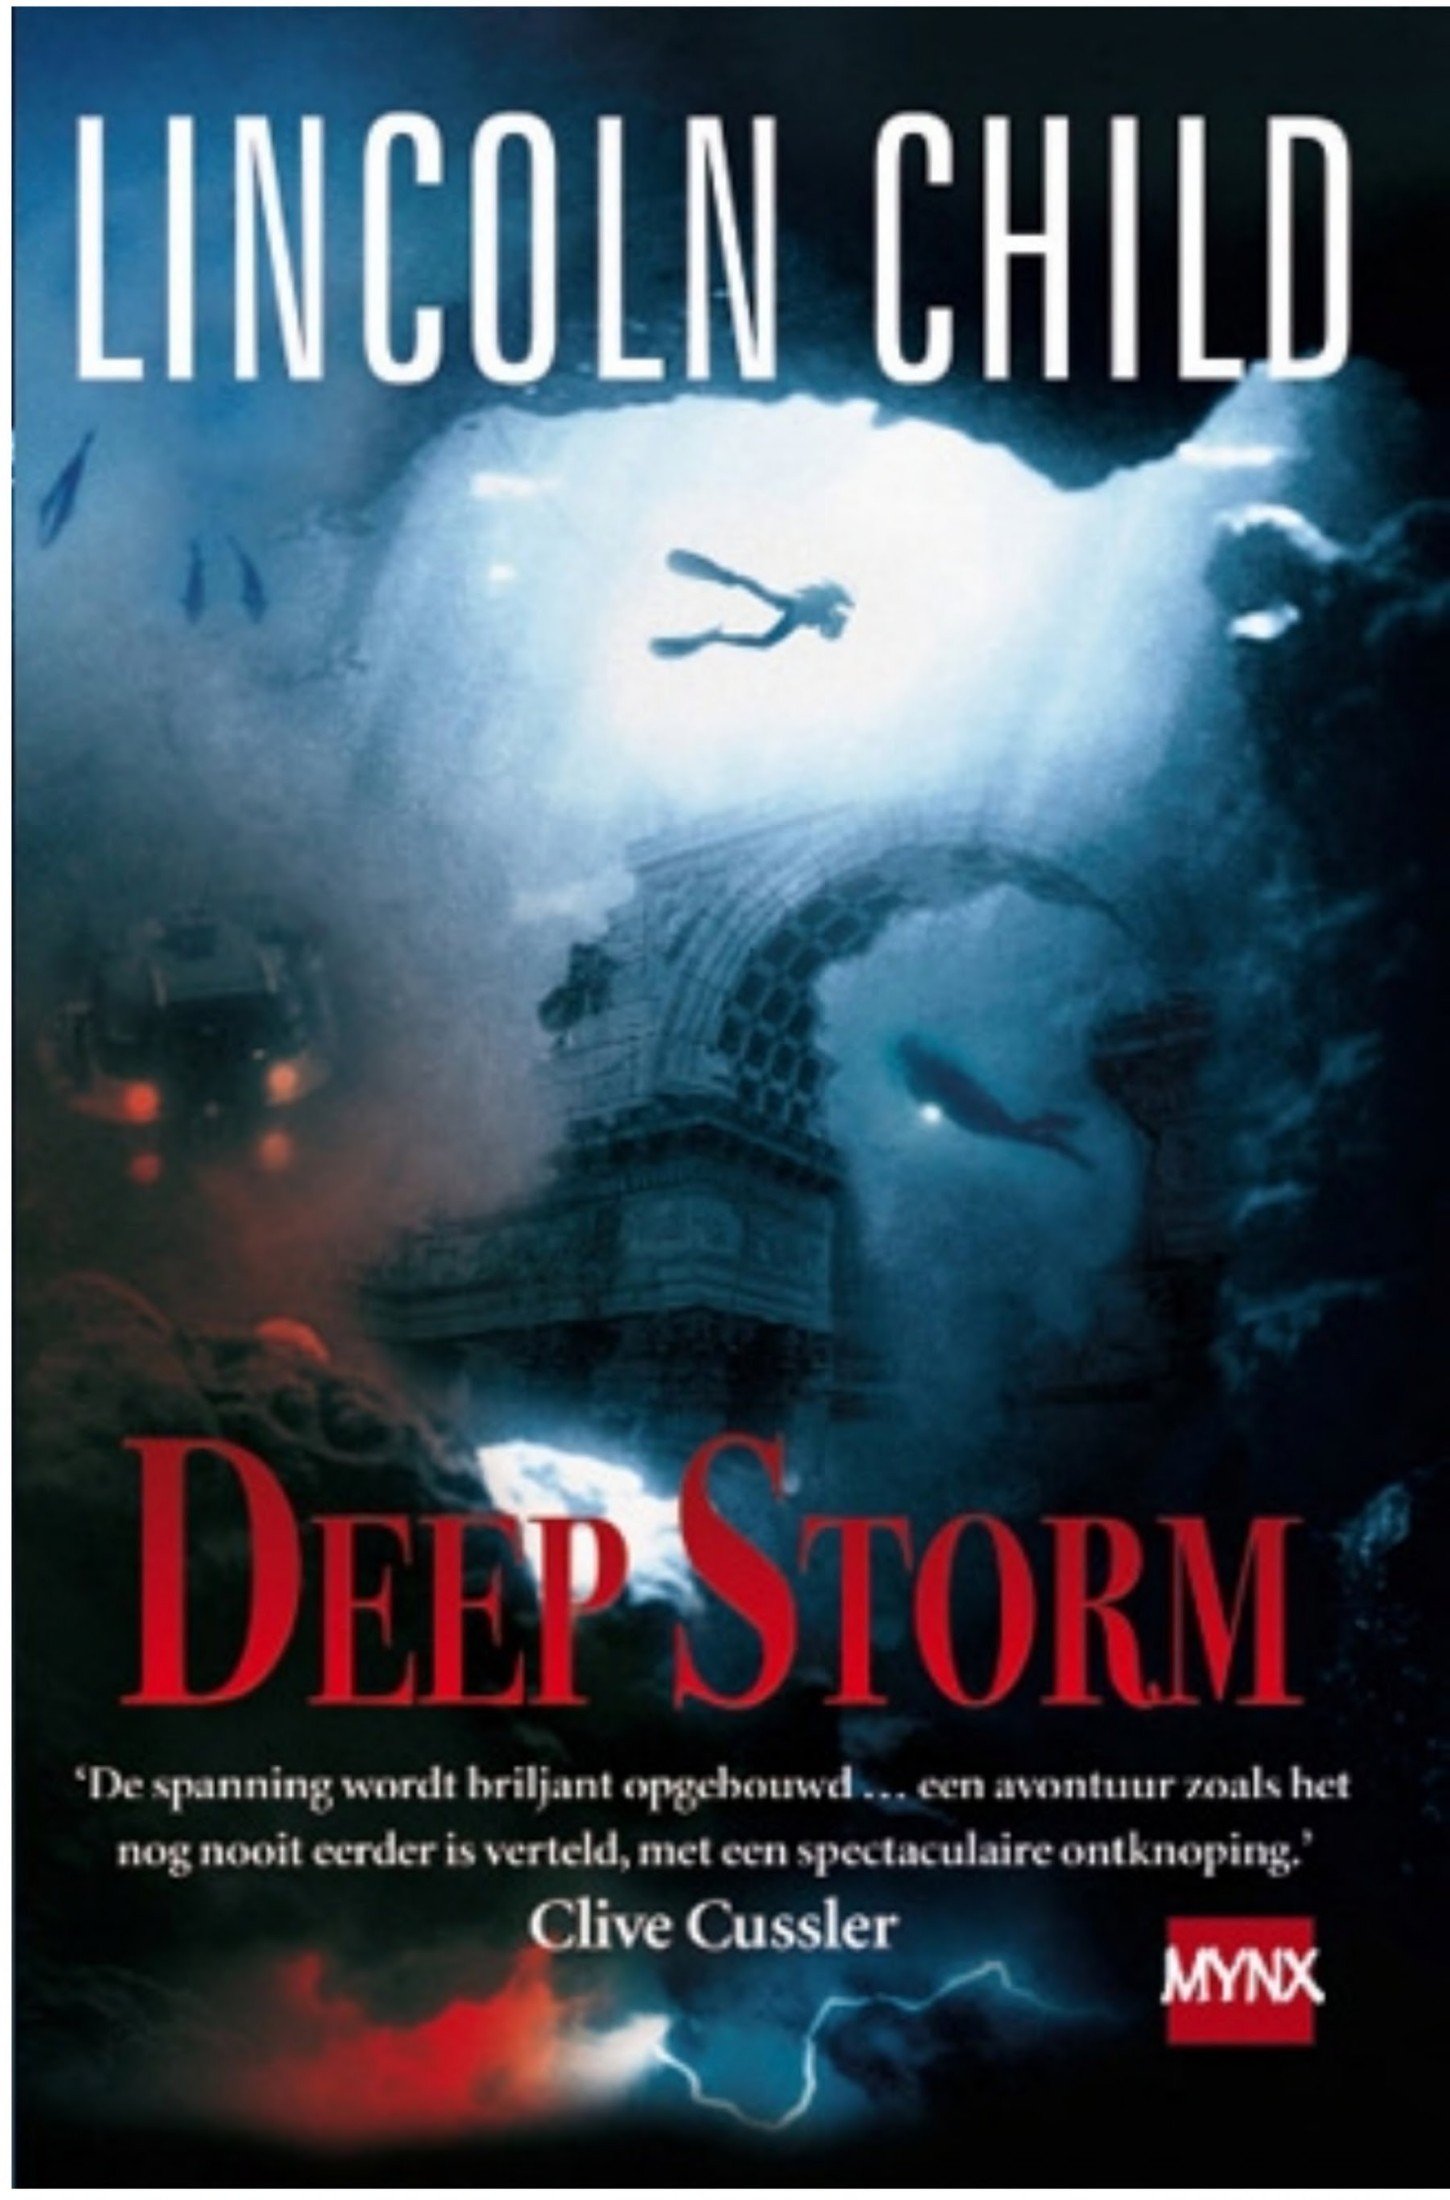 Deep storm